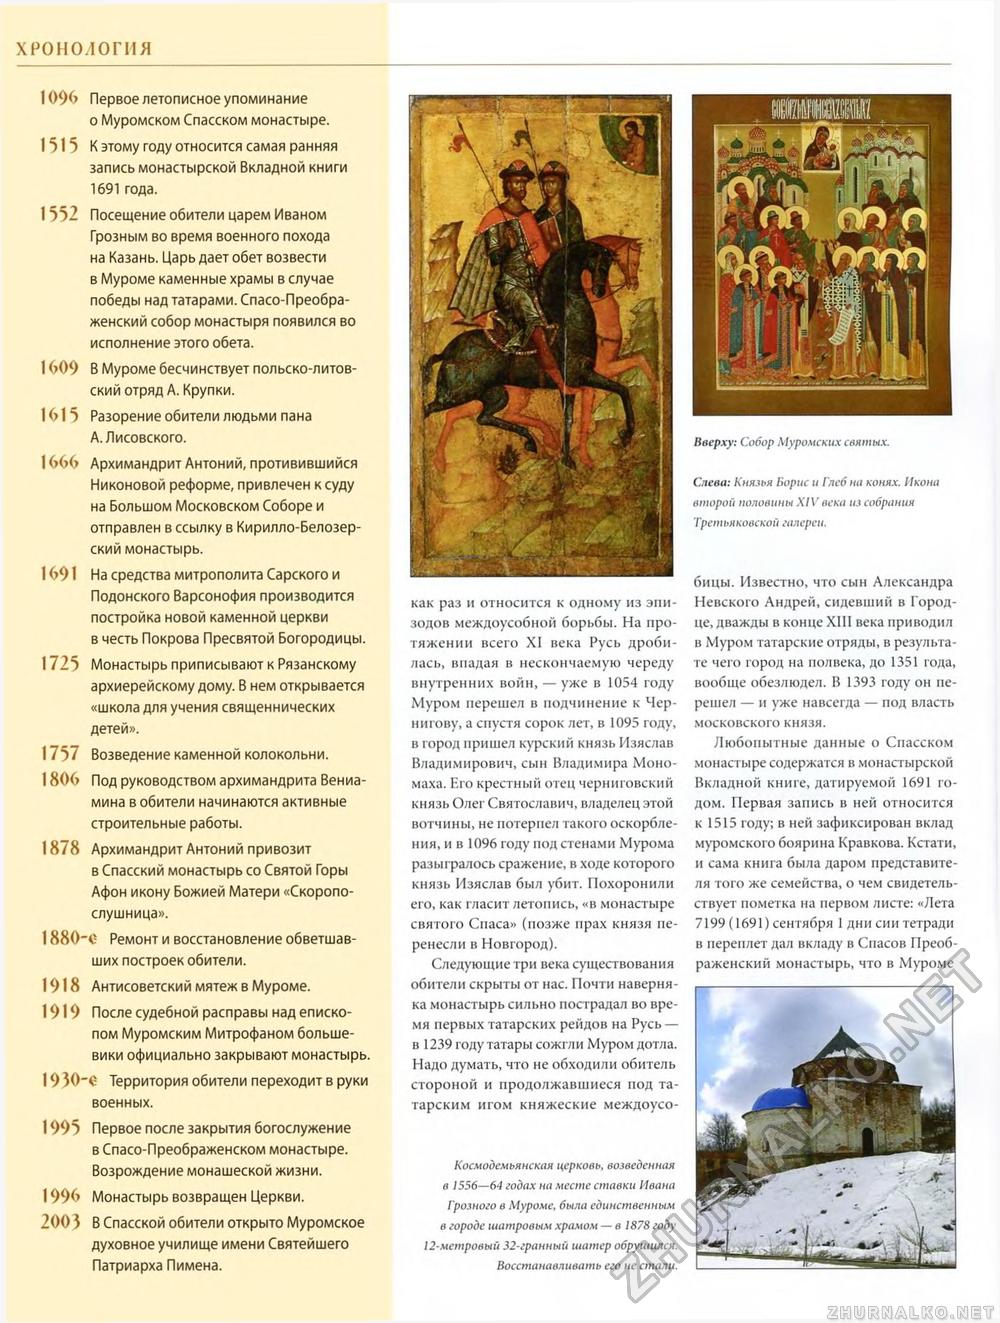 047. Муромский Спасо-Преображенский монастырь, страница 4